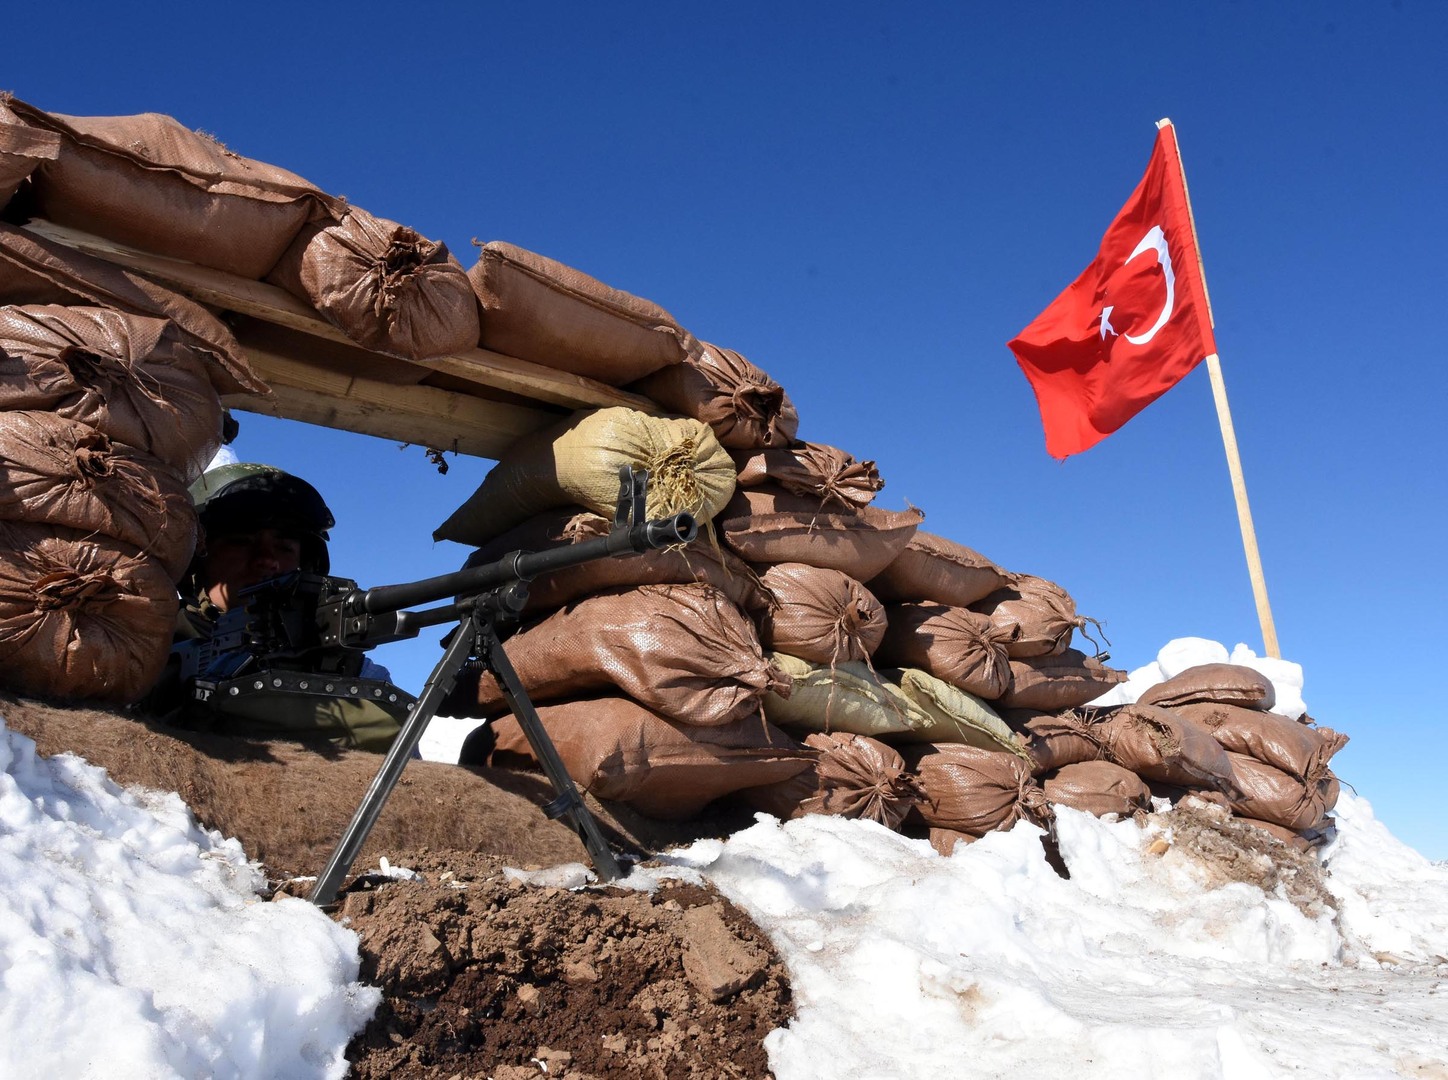 تركيا تعلن تحييد 19 عنصرا من حزب العمال الكردستاني ووحدات حماية الشعب (فيديو)